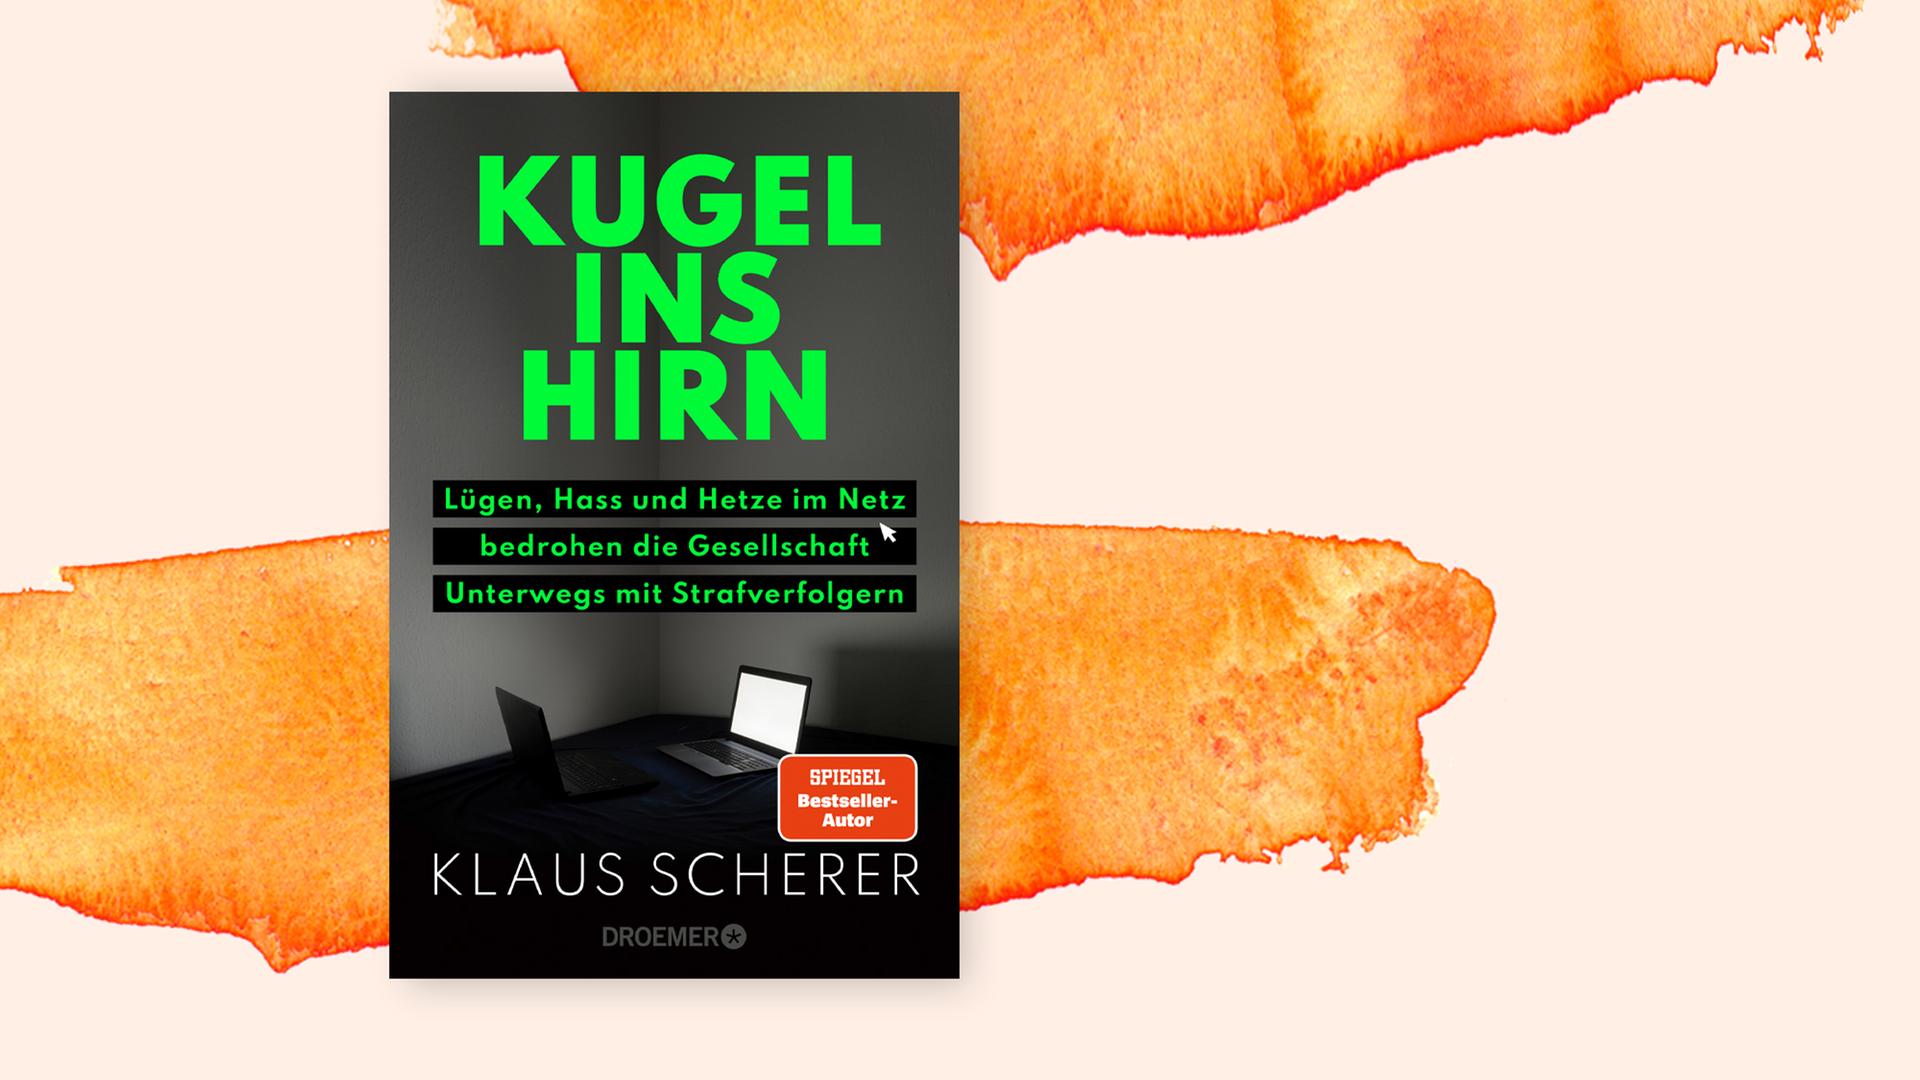 Cover des Buches "Kugel ins Hirn" von Klaus Scherer. Zu sehen ist ein düsteres Schwarz-Weiß-Bild. In einer Zimmerecke steht ein Tisch mit leuchtendem Computermonitor. Die Schrift ist neongrün, auf einem kleinen, roten Emblem steht "Spiegel-Bestseller-Autor". 